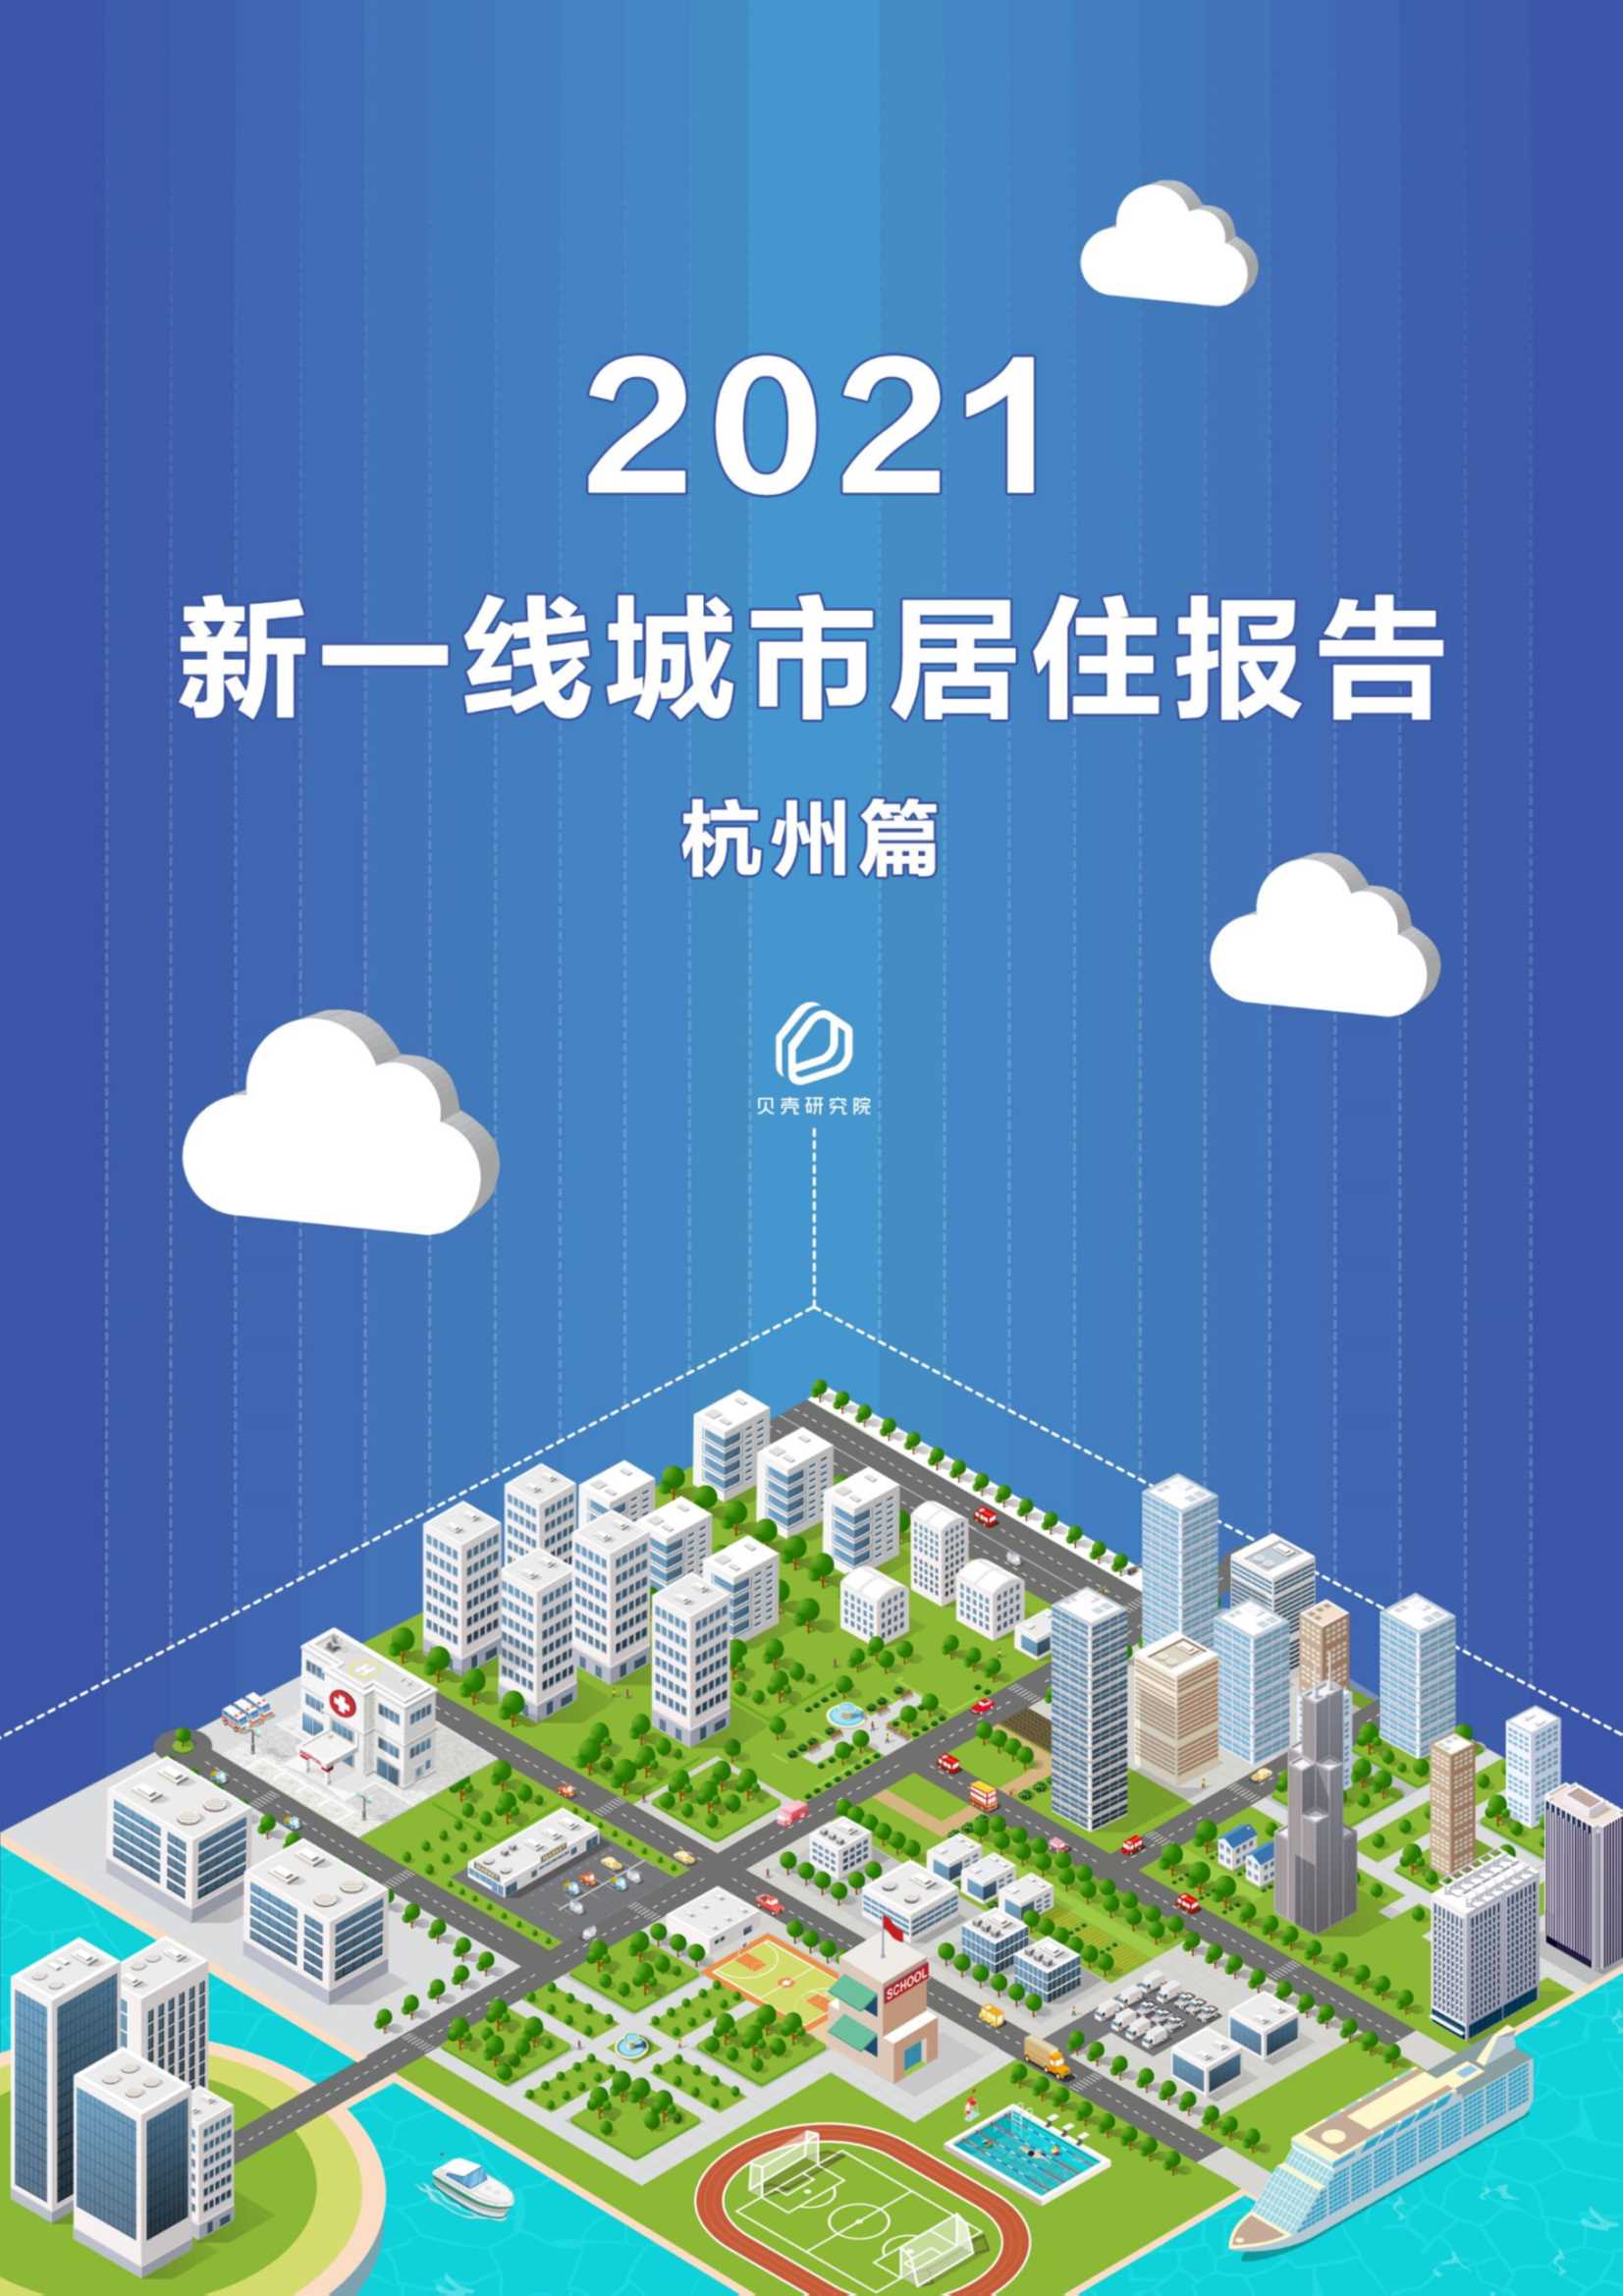 贝壳研究院-新一线城市居住报告杭州篇-2021.05-9页